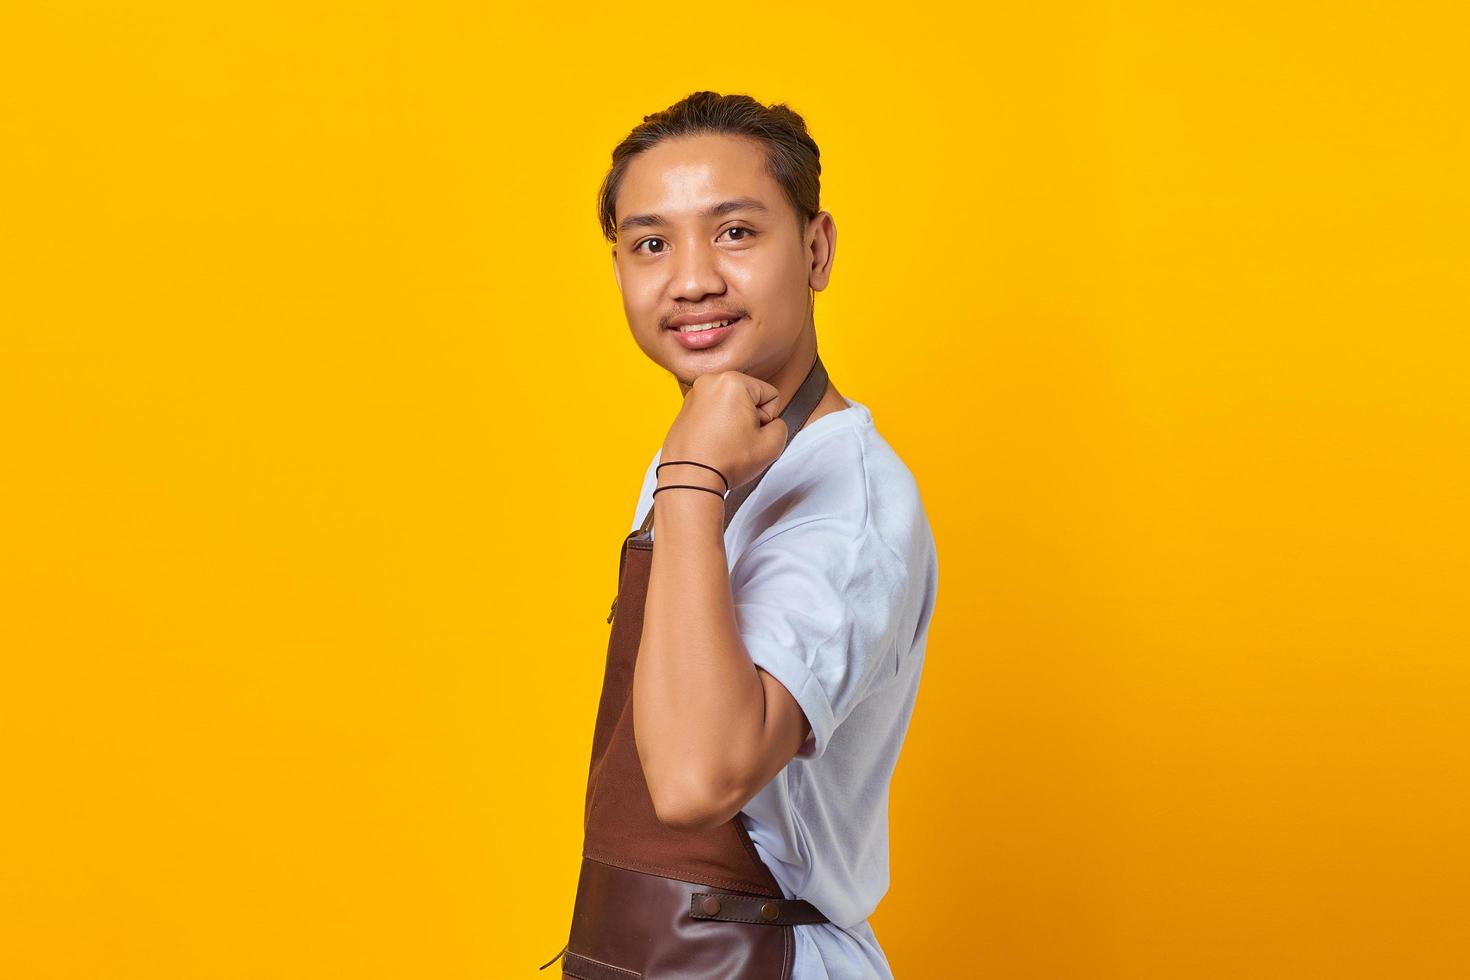 ritratto di un giovane asiatico fiducioso che indossa un grembiule che mostra i muscoli del braccio mentre sorride con orgoglio su sfondo giallo foto